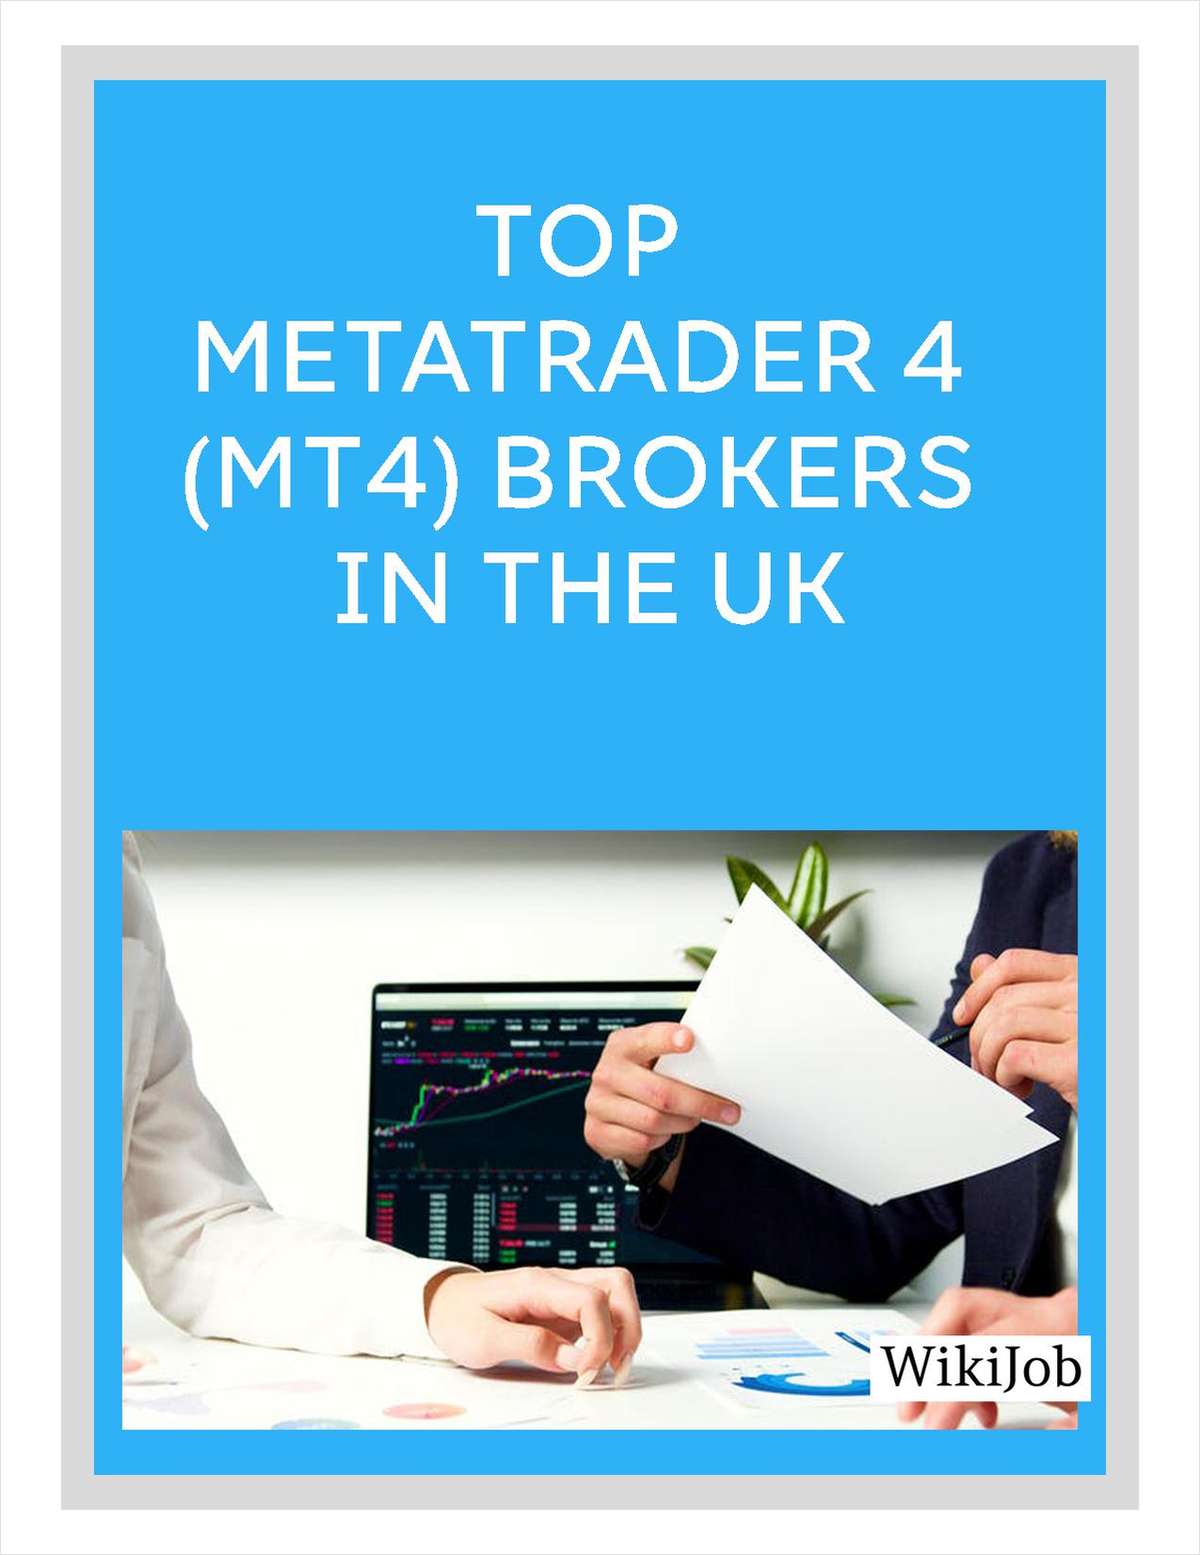 Top MetaTrader 4 (MT4) Brokers in the UK